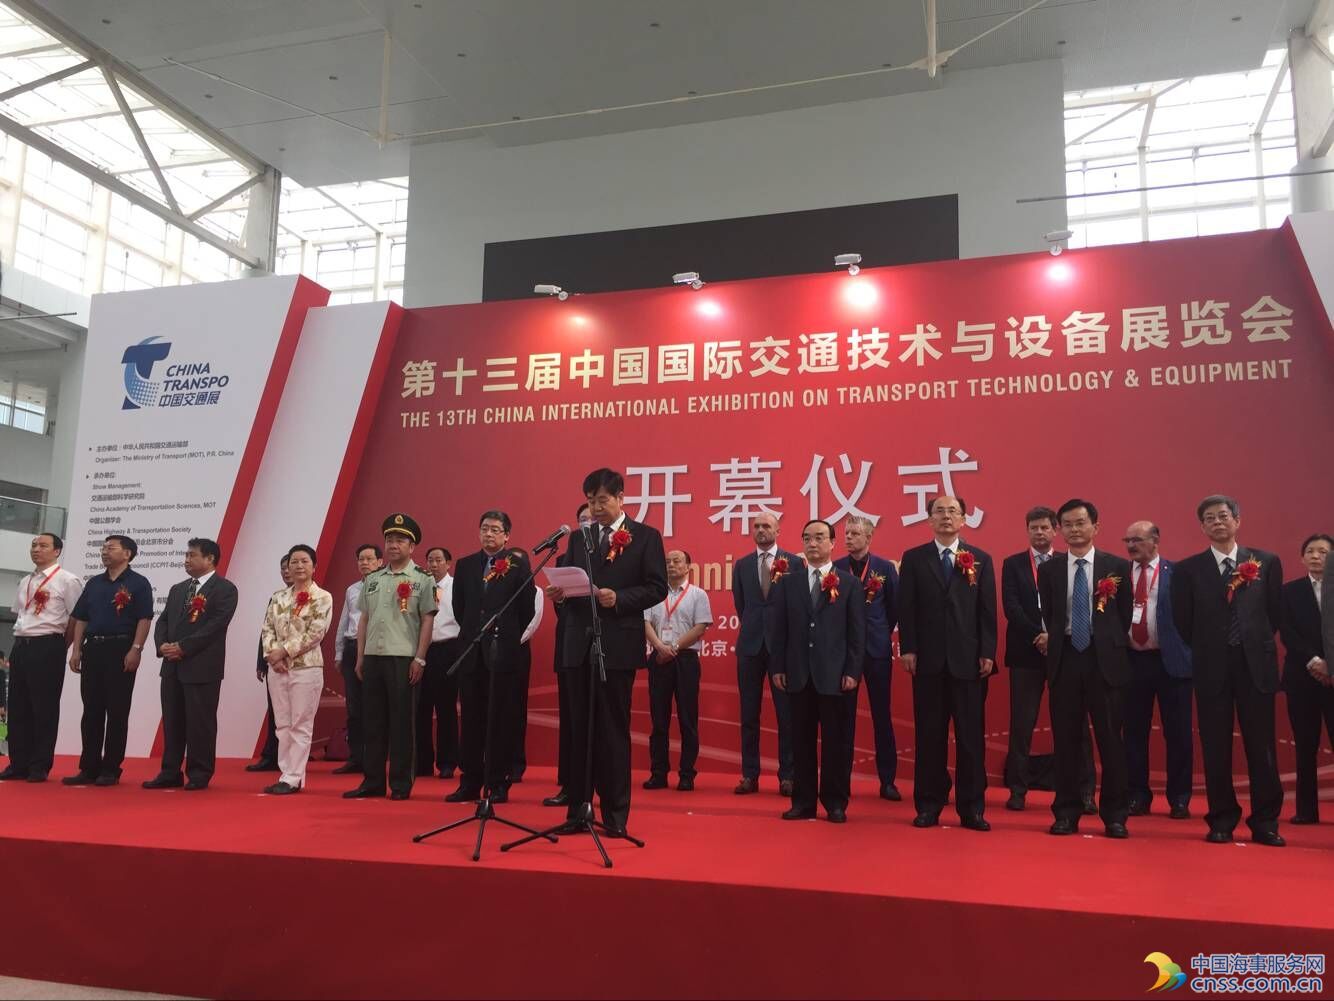 2016年5月23日，由交通运输部主办，交通运输部科学研究院、北京市贸促会、中国公路学会、中国交通报社共同承办的“第十三届中国国际交通技术与设备展览会”（CHINA TRANSPO 2016）在北京中国国际展览中心（新馆）盛大开幕，本届展会也是交通运输部唯一获批主办的大型国际专业展览会。